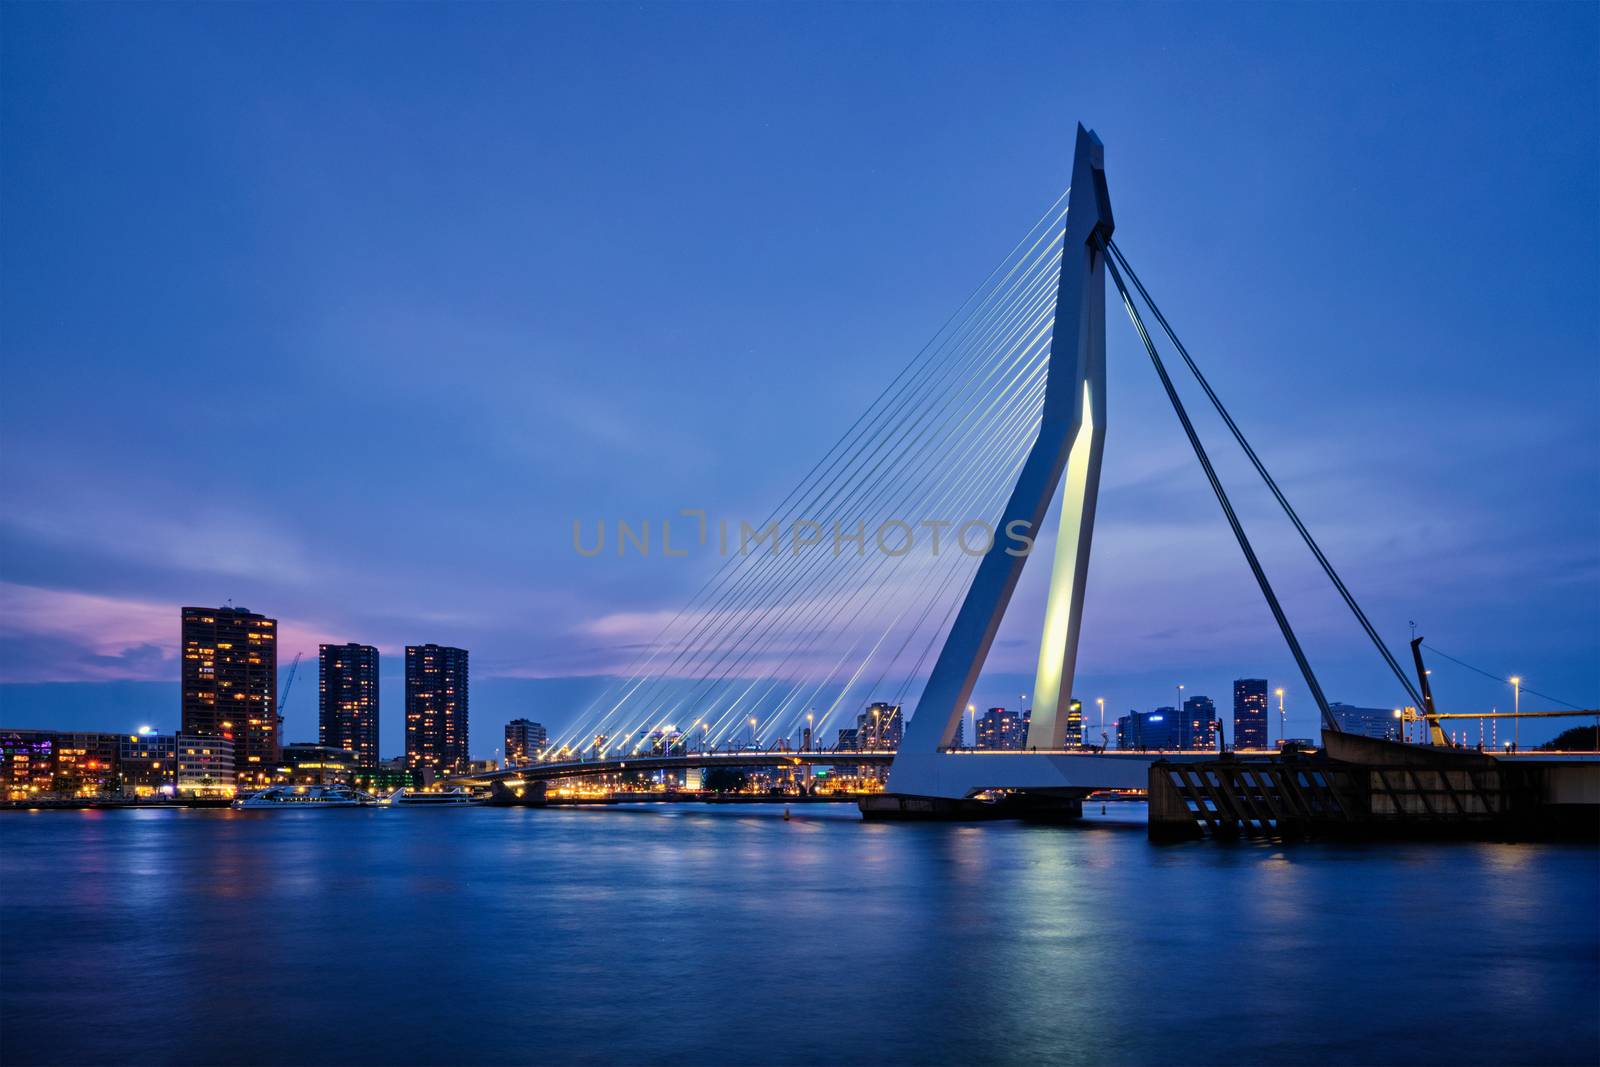 Erasmus Bridge, Rotterdam, Netherlands by dimol